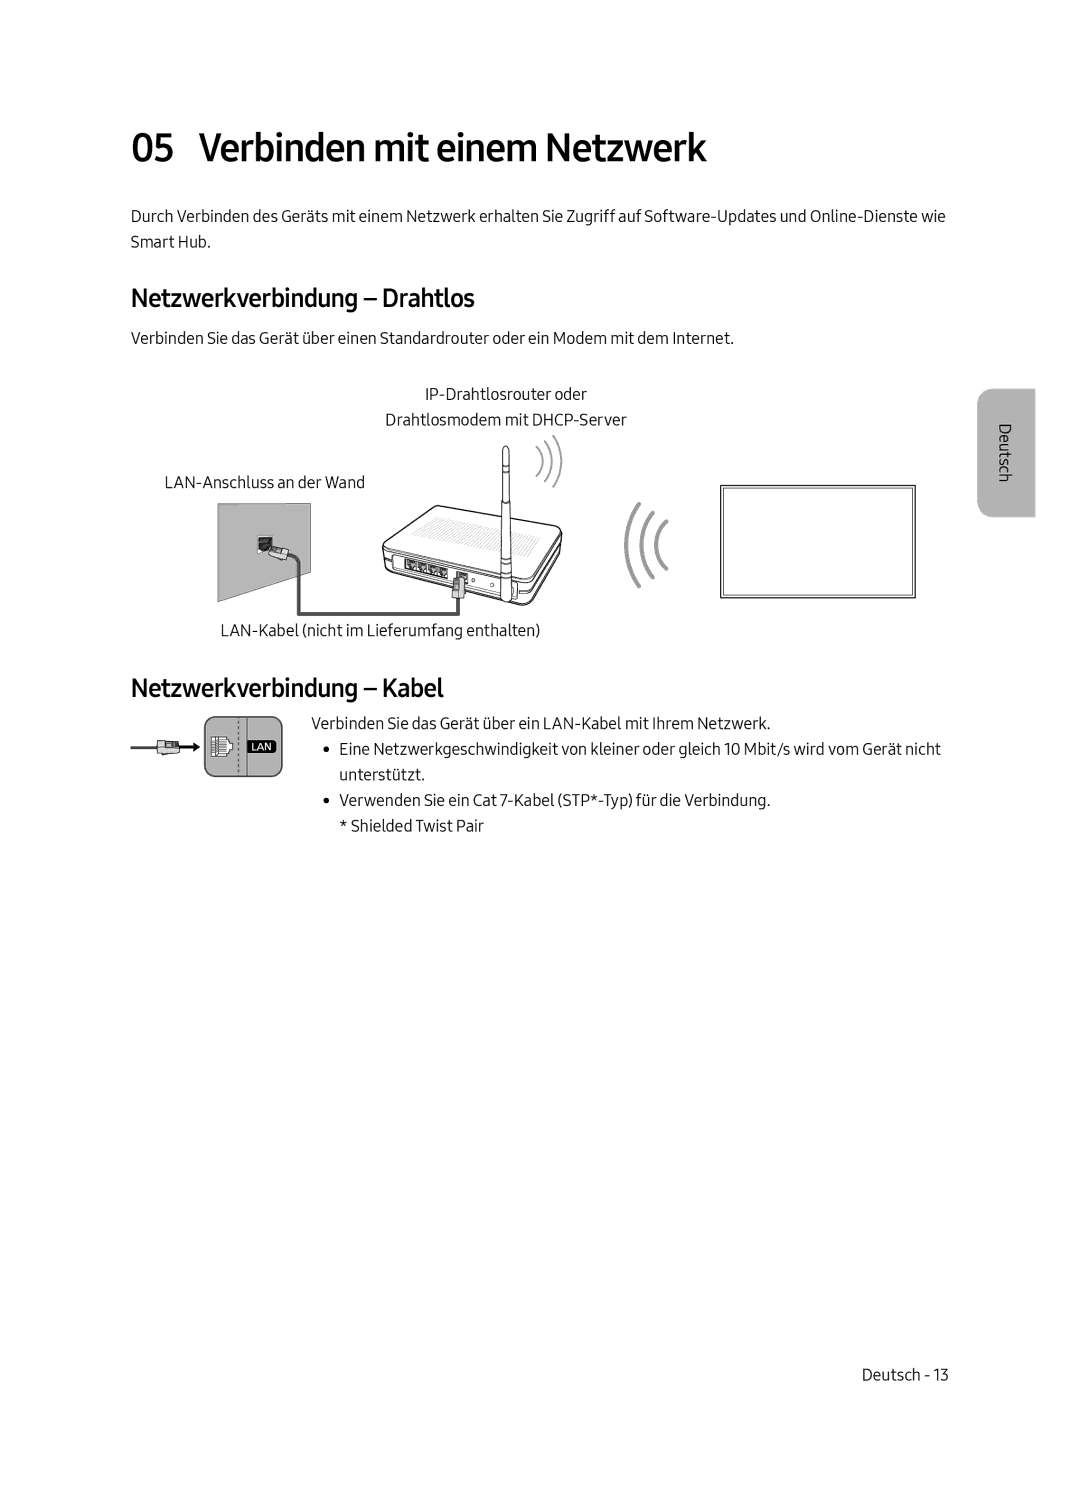 Samsung UE55MU6220WXXN manual Verbinden mit einem Netzwerk, Netzwerkverbindung Drahtlos, Netzwerkverbindung Kabel 